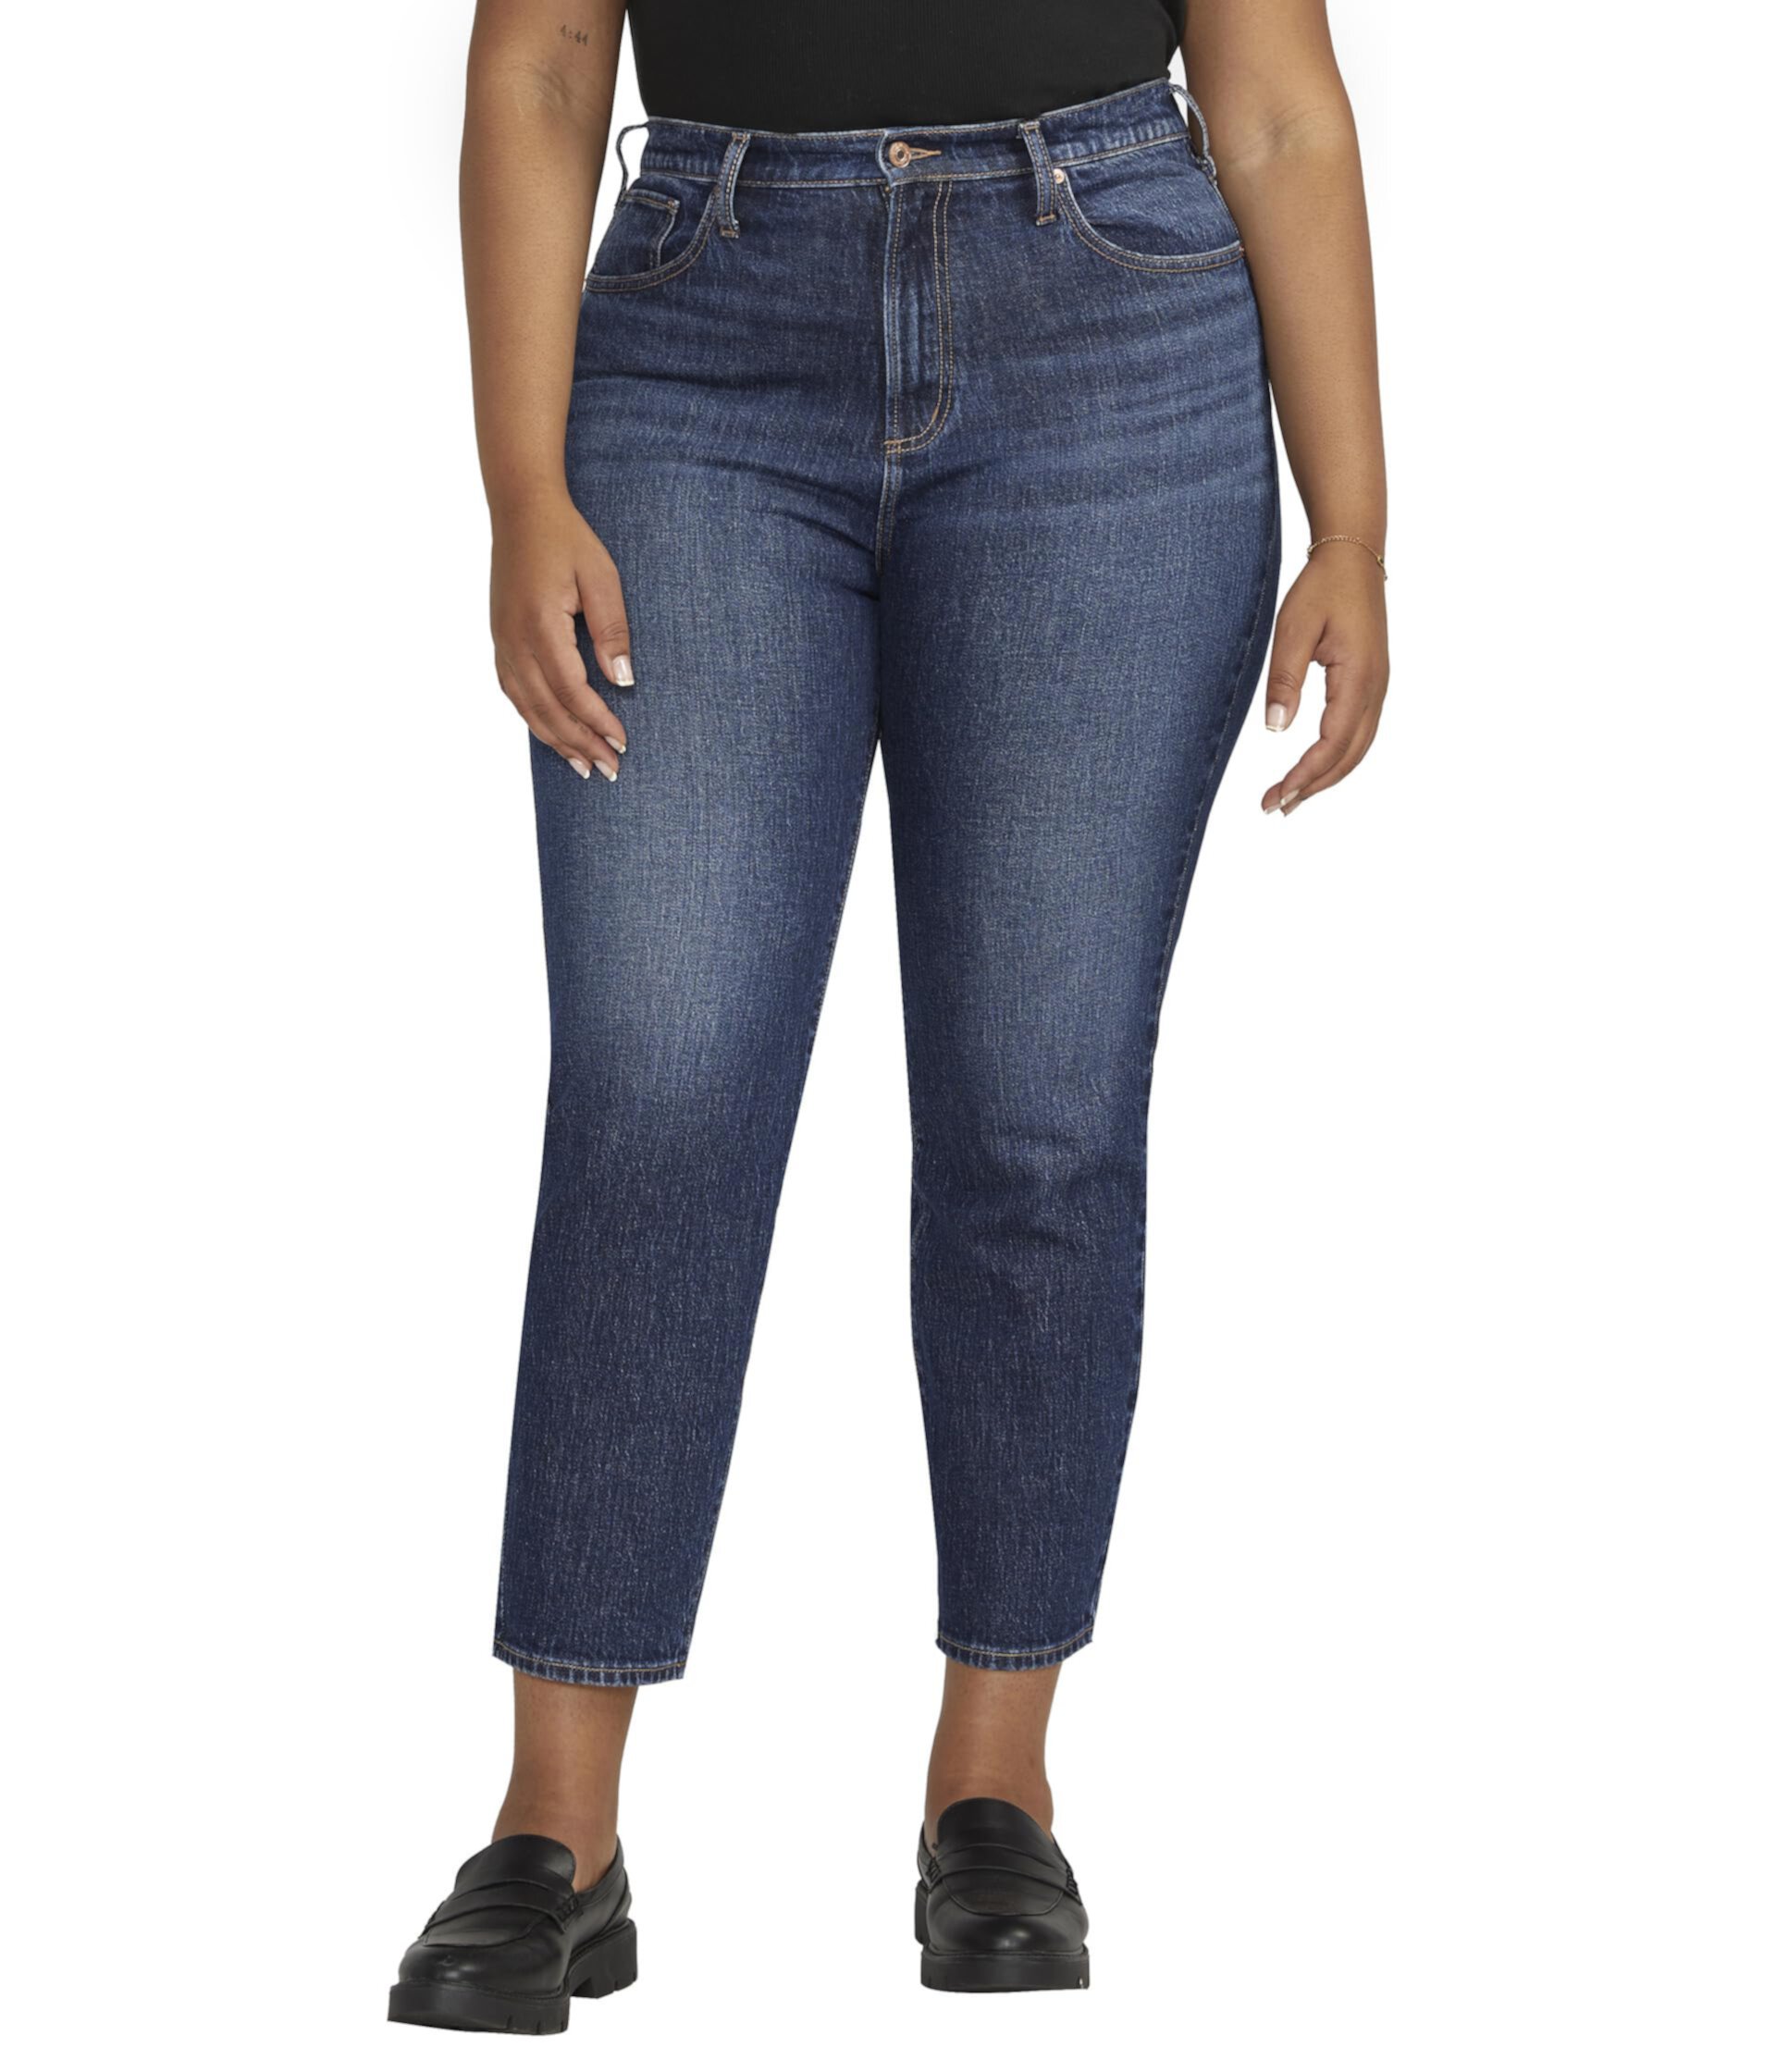 Узкие прямые джинсы больших размеров с высокой посадкой W28440RCS340 Silver Jeans Co.